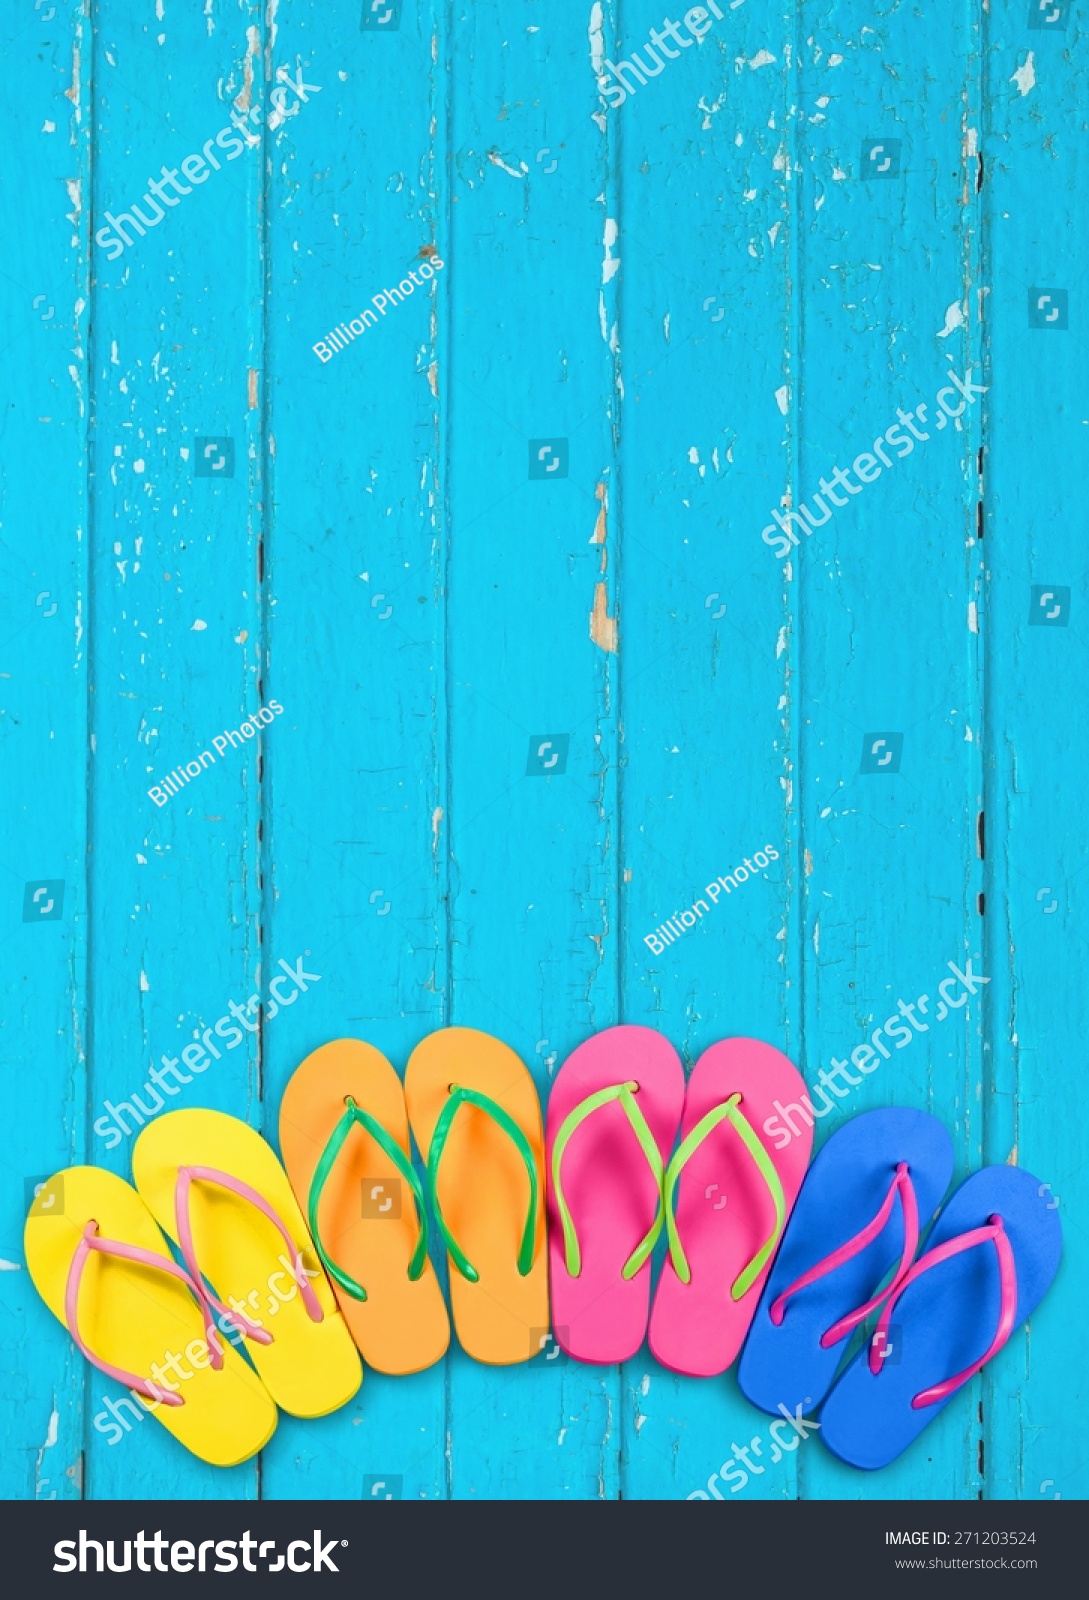 Summer, Beach, Flip-Flop. Stock Photo 271203524 : Shutterstock